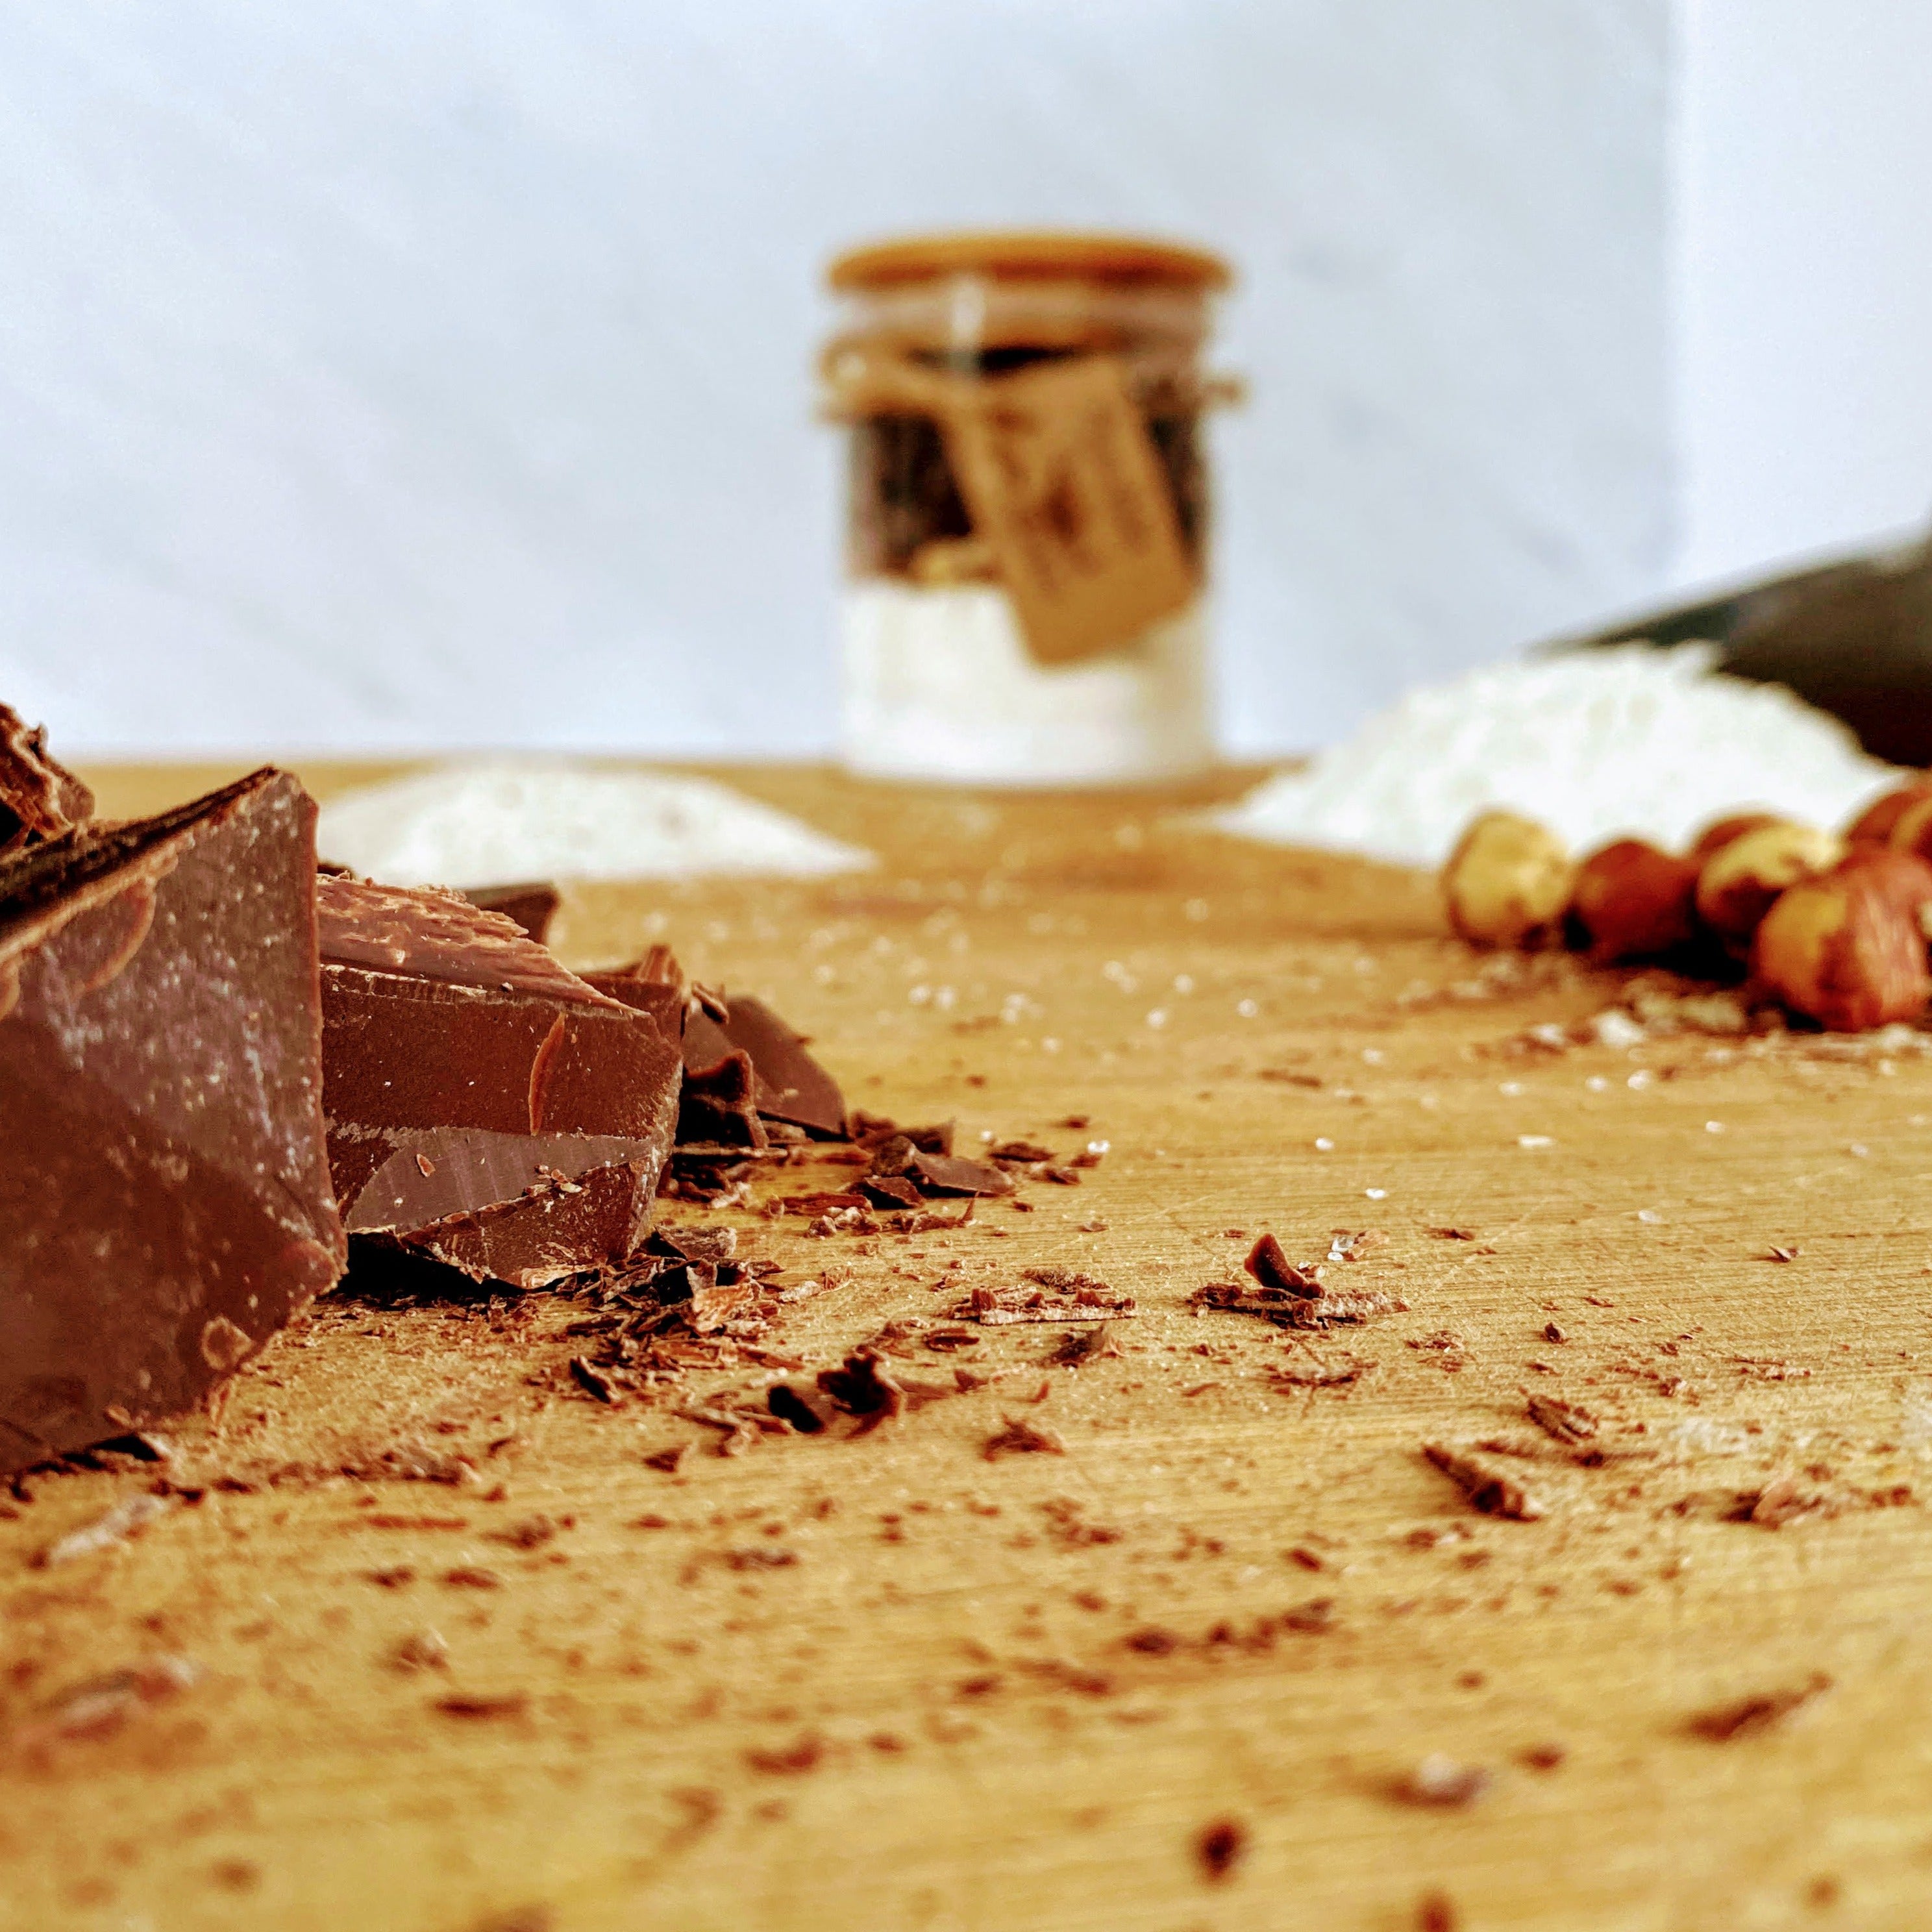 Melty Chocolate Cake with Hazelnuts | Le Fondant Hazelnuts